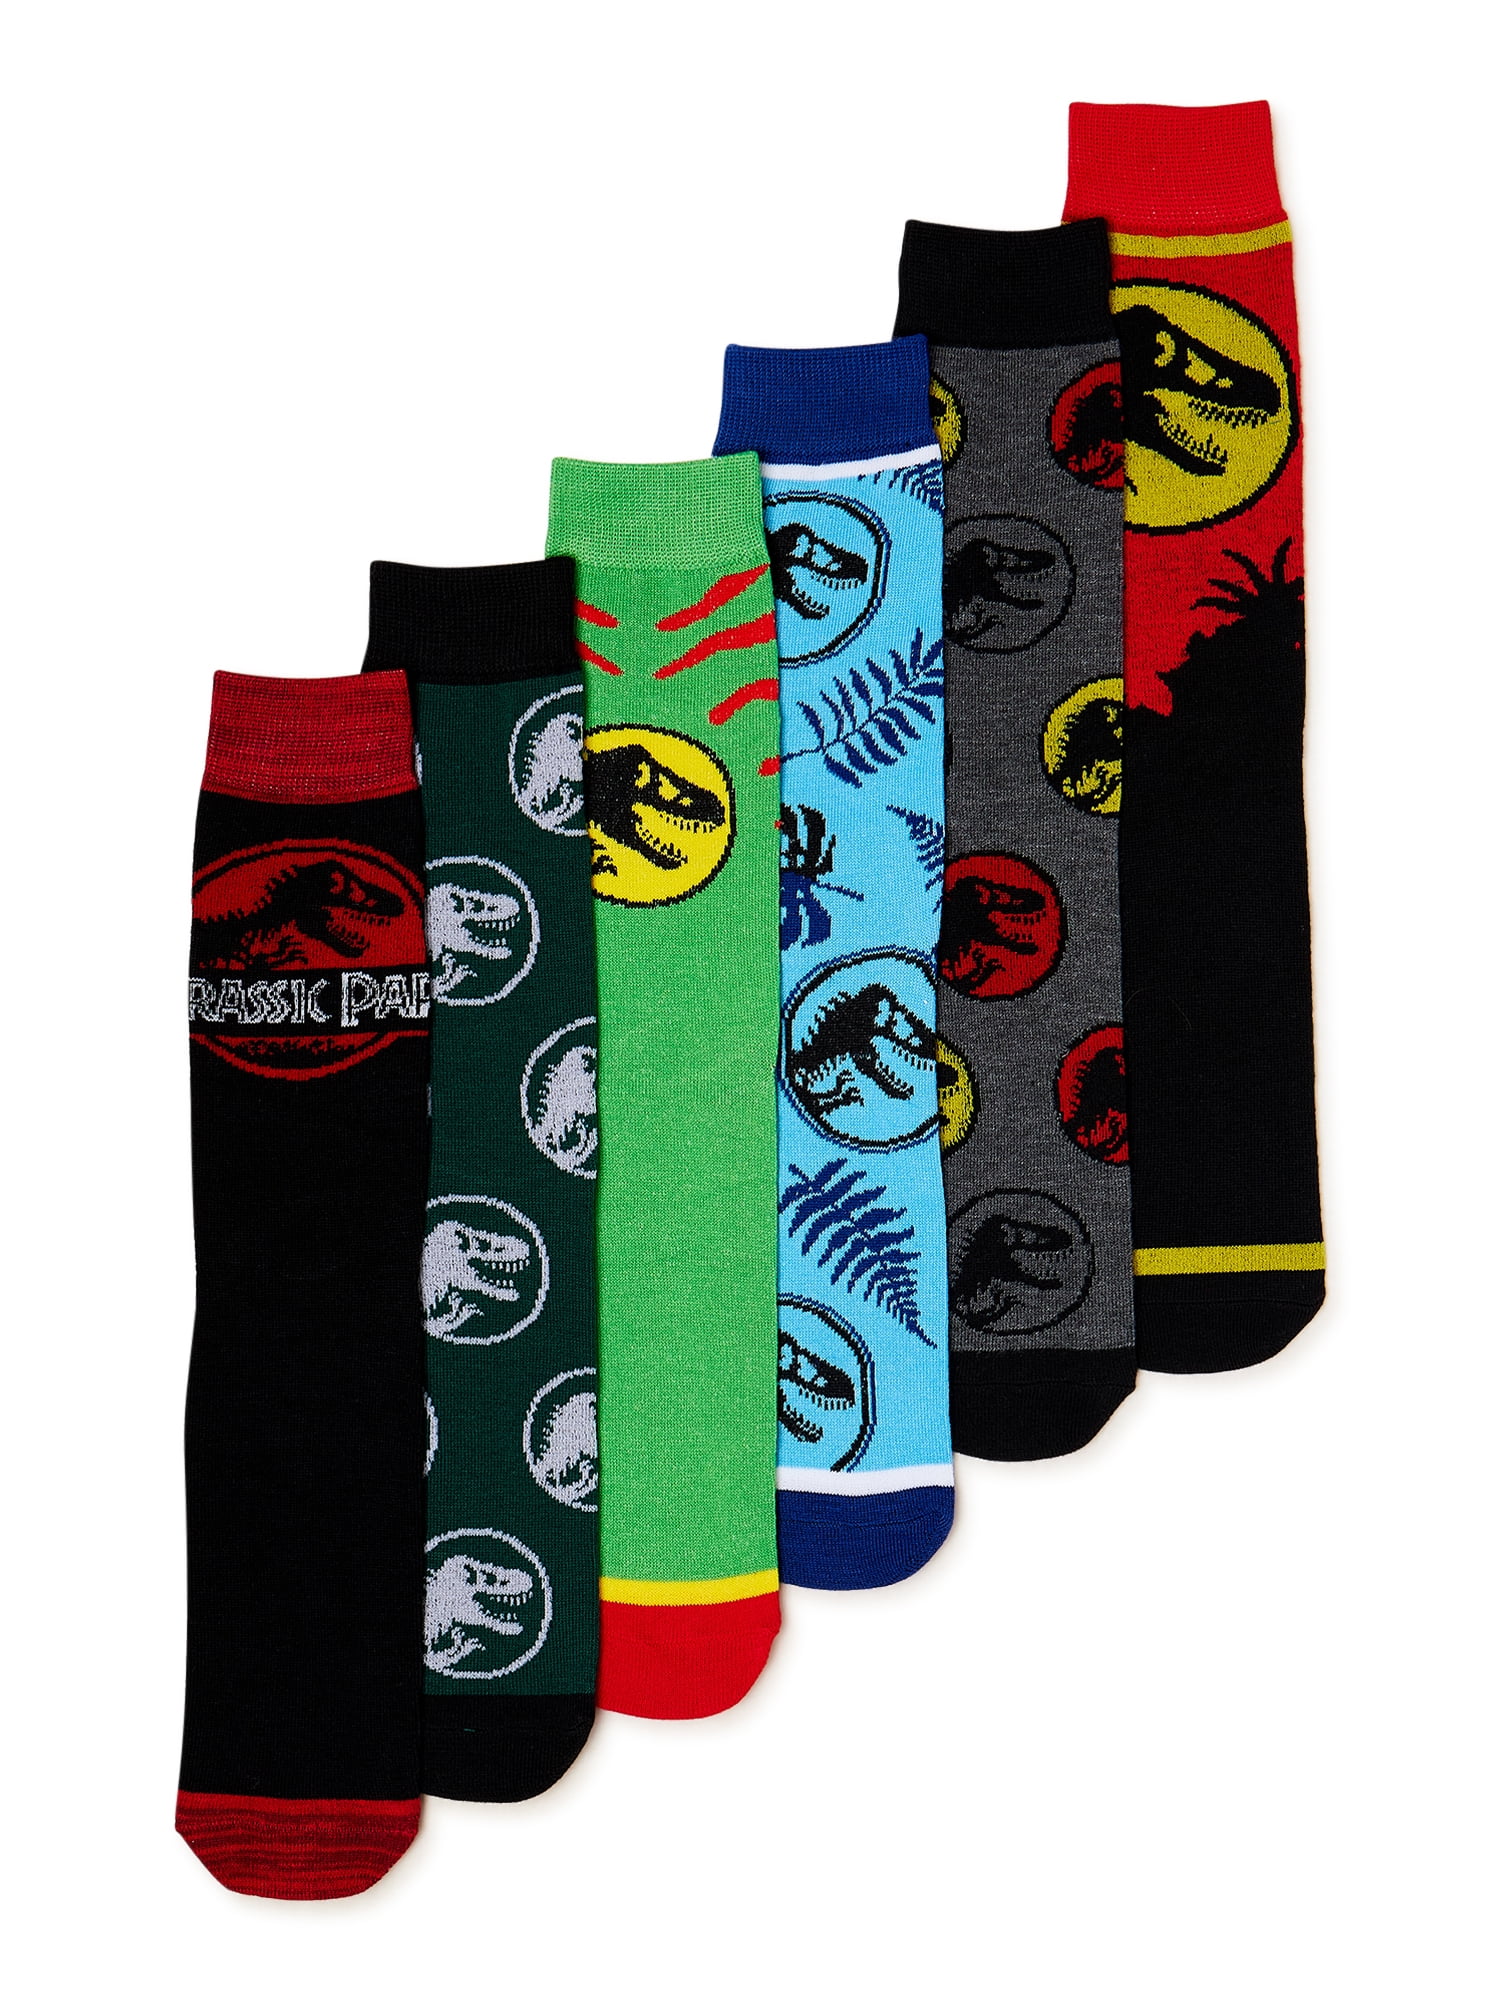 Jurassic Park Men's Crew Socks, 6-Pack